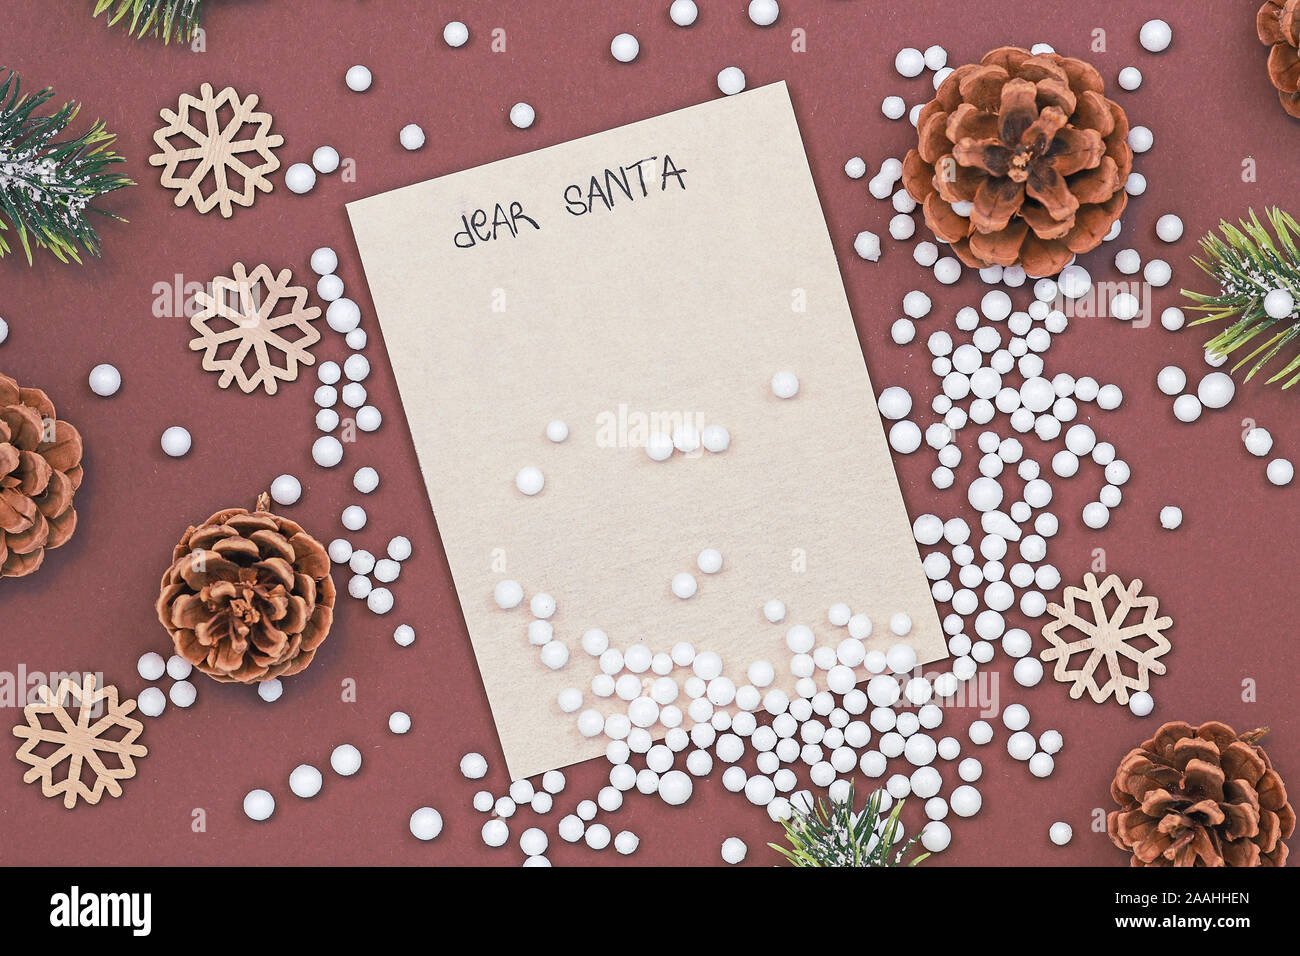 Vacances de Noël la saison de mise à plat avec un concept pour les enfants lettre au Père Noël avec lettre blanc vide, pommes de pin, boules et cônes de sapin sur b Banque D'Images